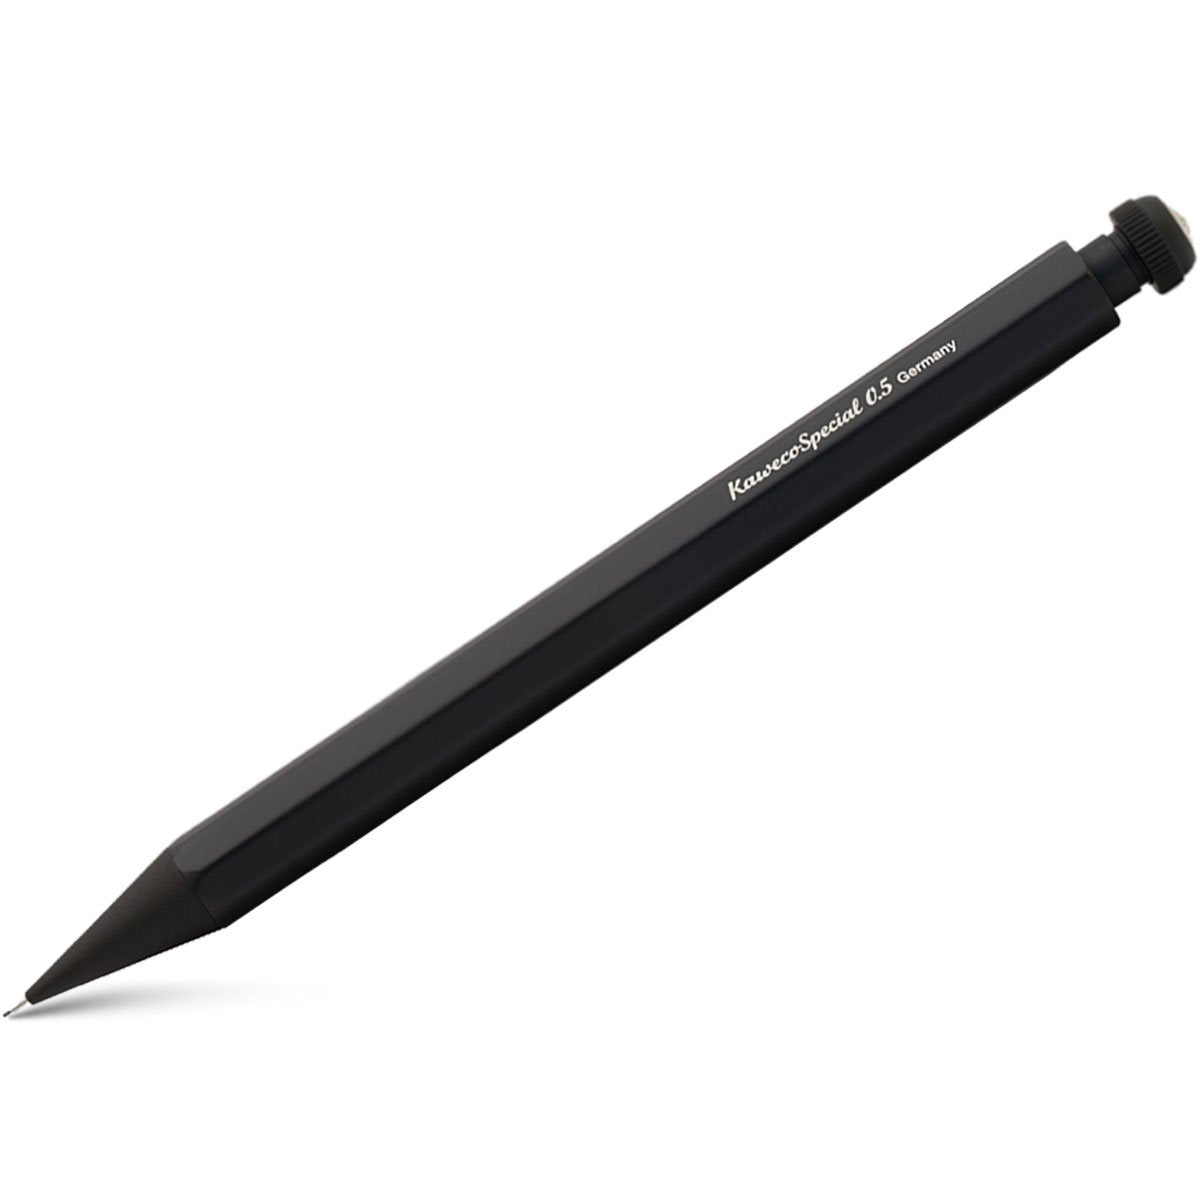 Kaweco Classic Special Al Mechanical Pencil - Matte Black - 0.5 mm-Pen Boutique Ltd